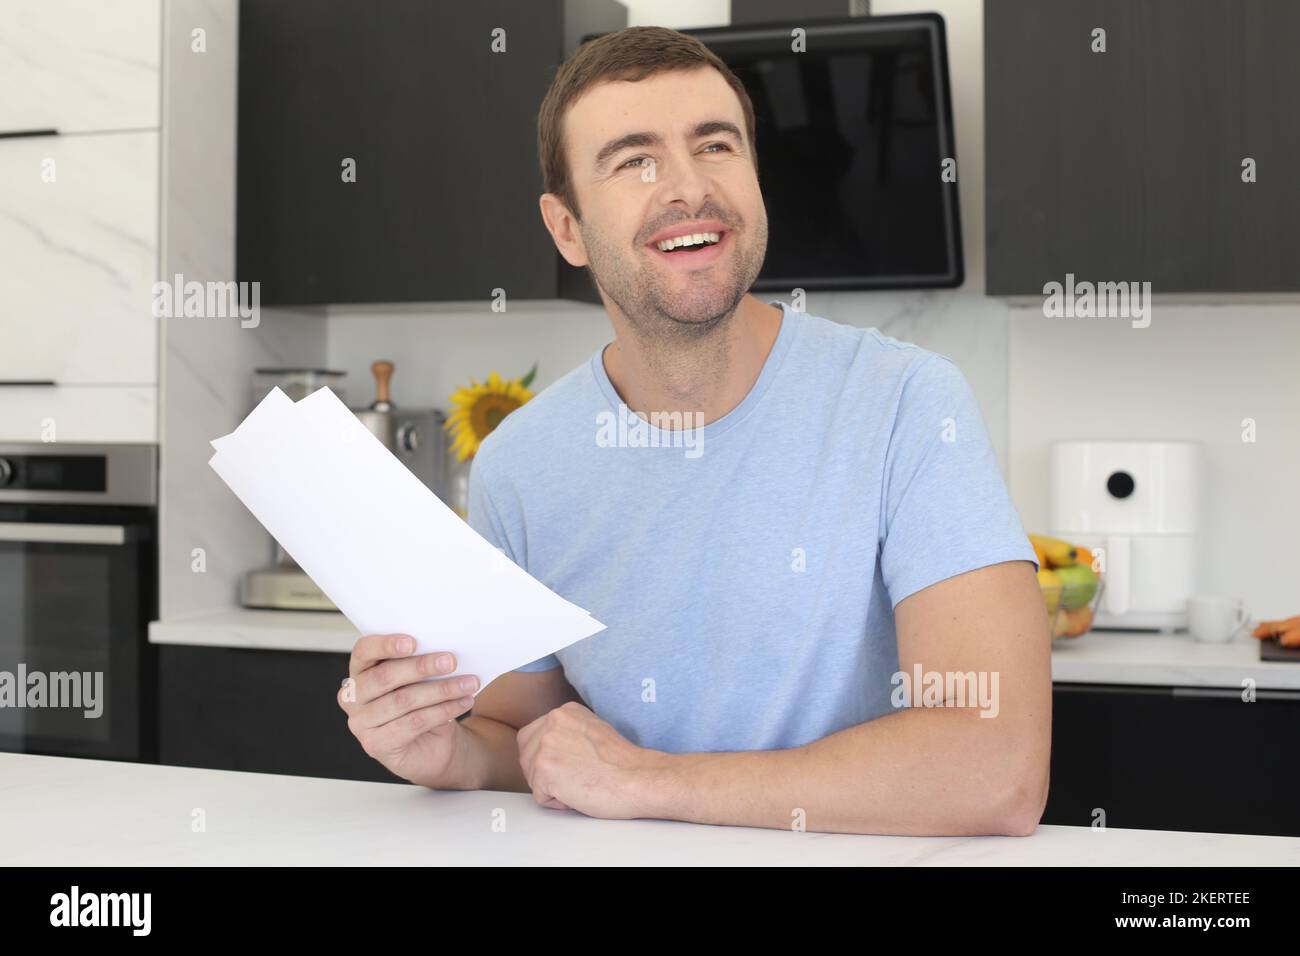 Homme satisfait regardant quelques documents dans la cuisine Banque D'Images